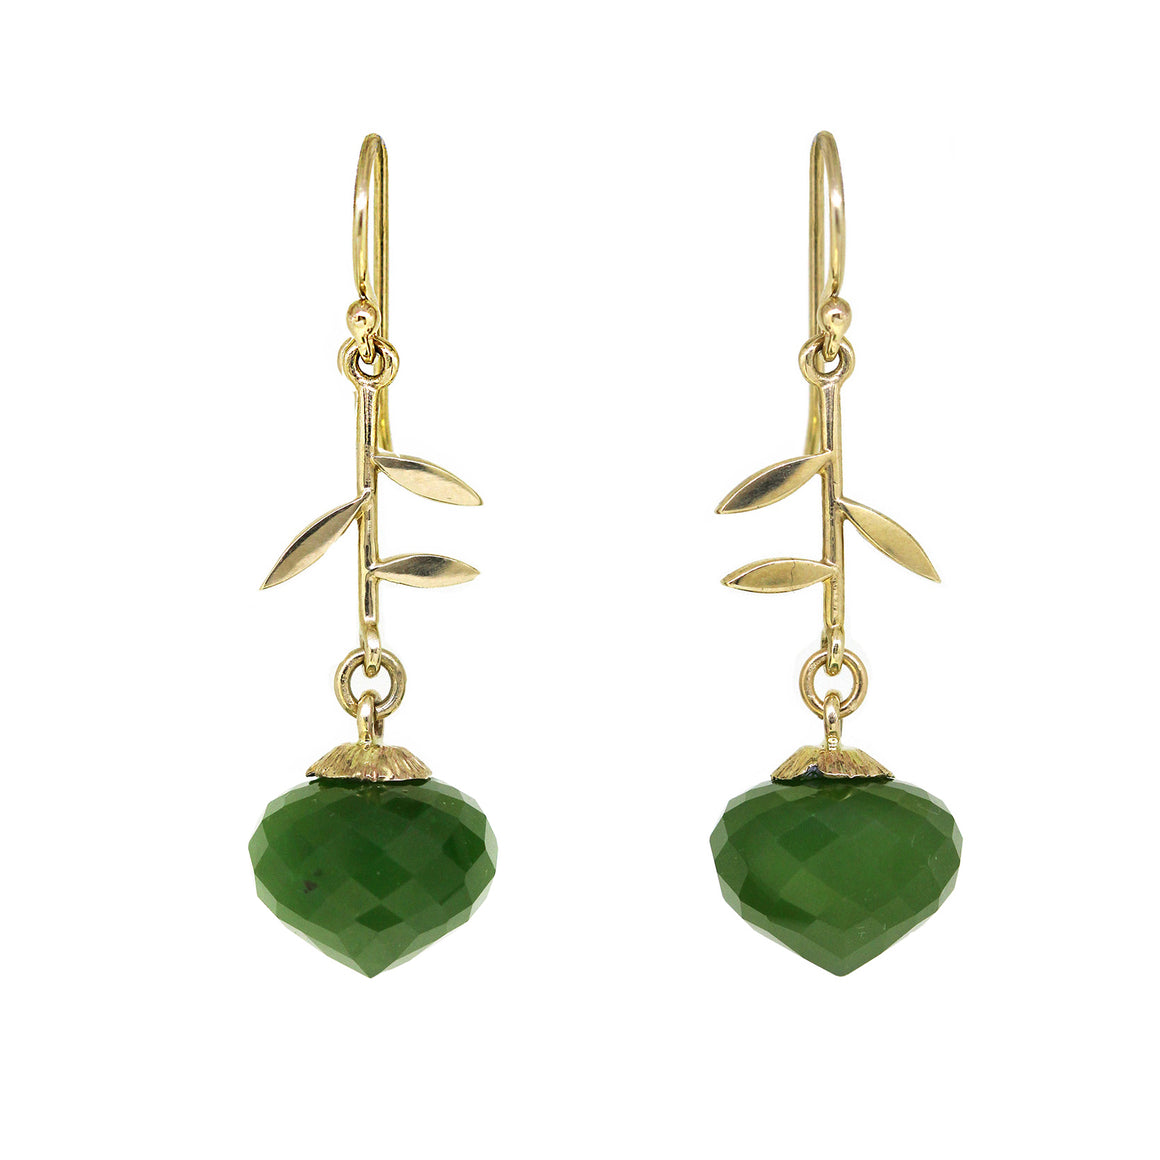 Jade Jardin earrings in gold